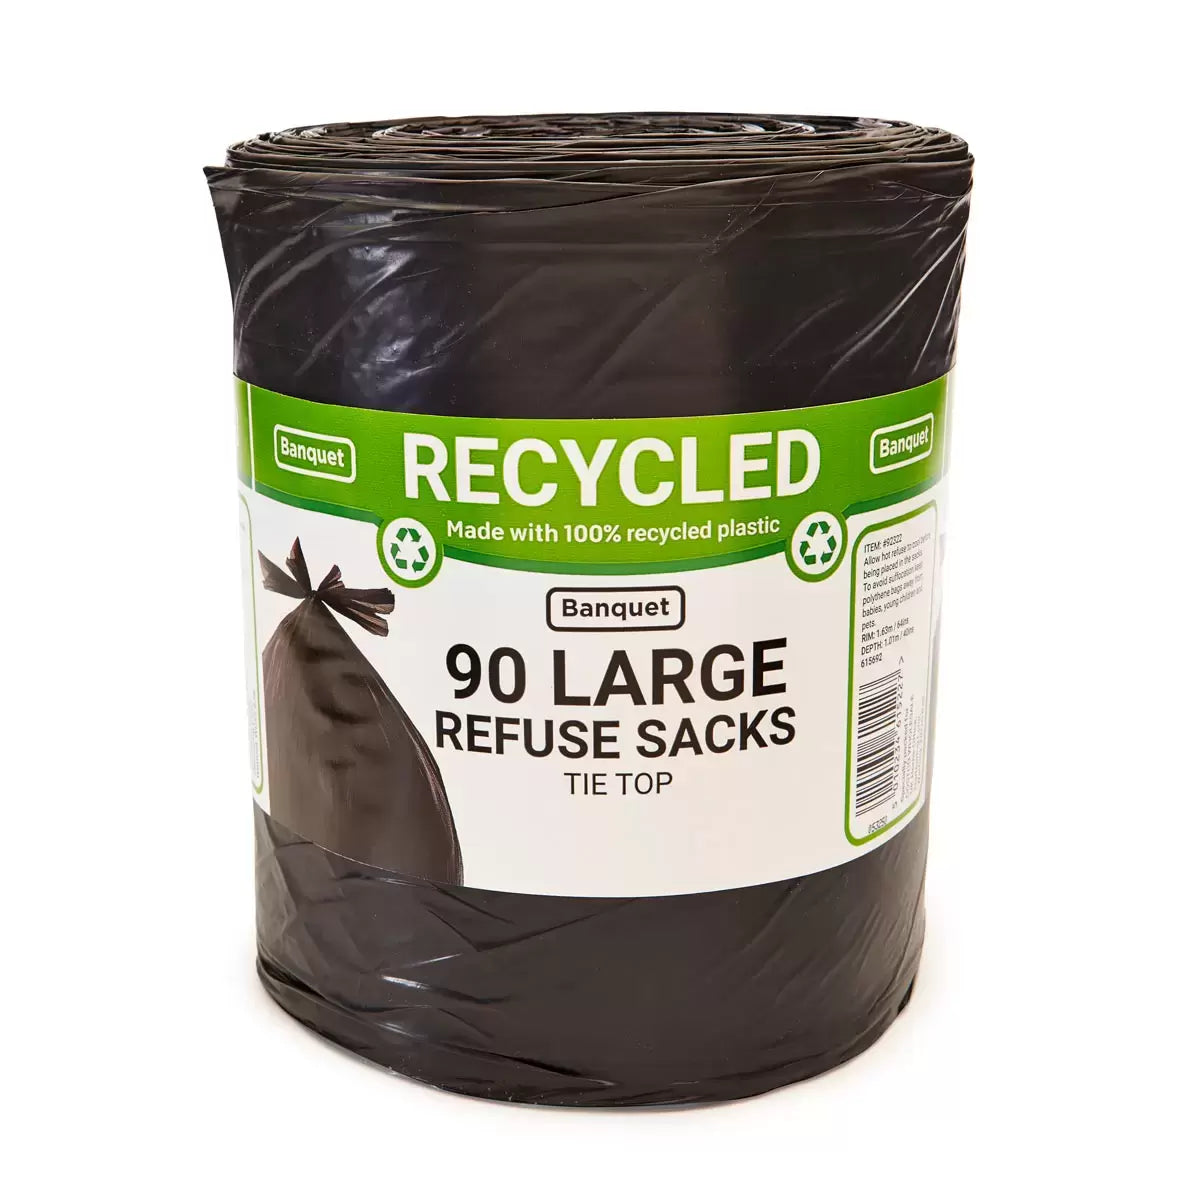 Large refuse sacks